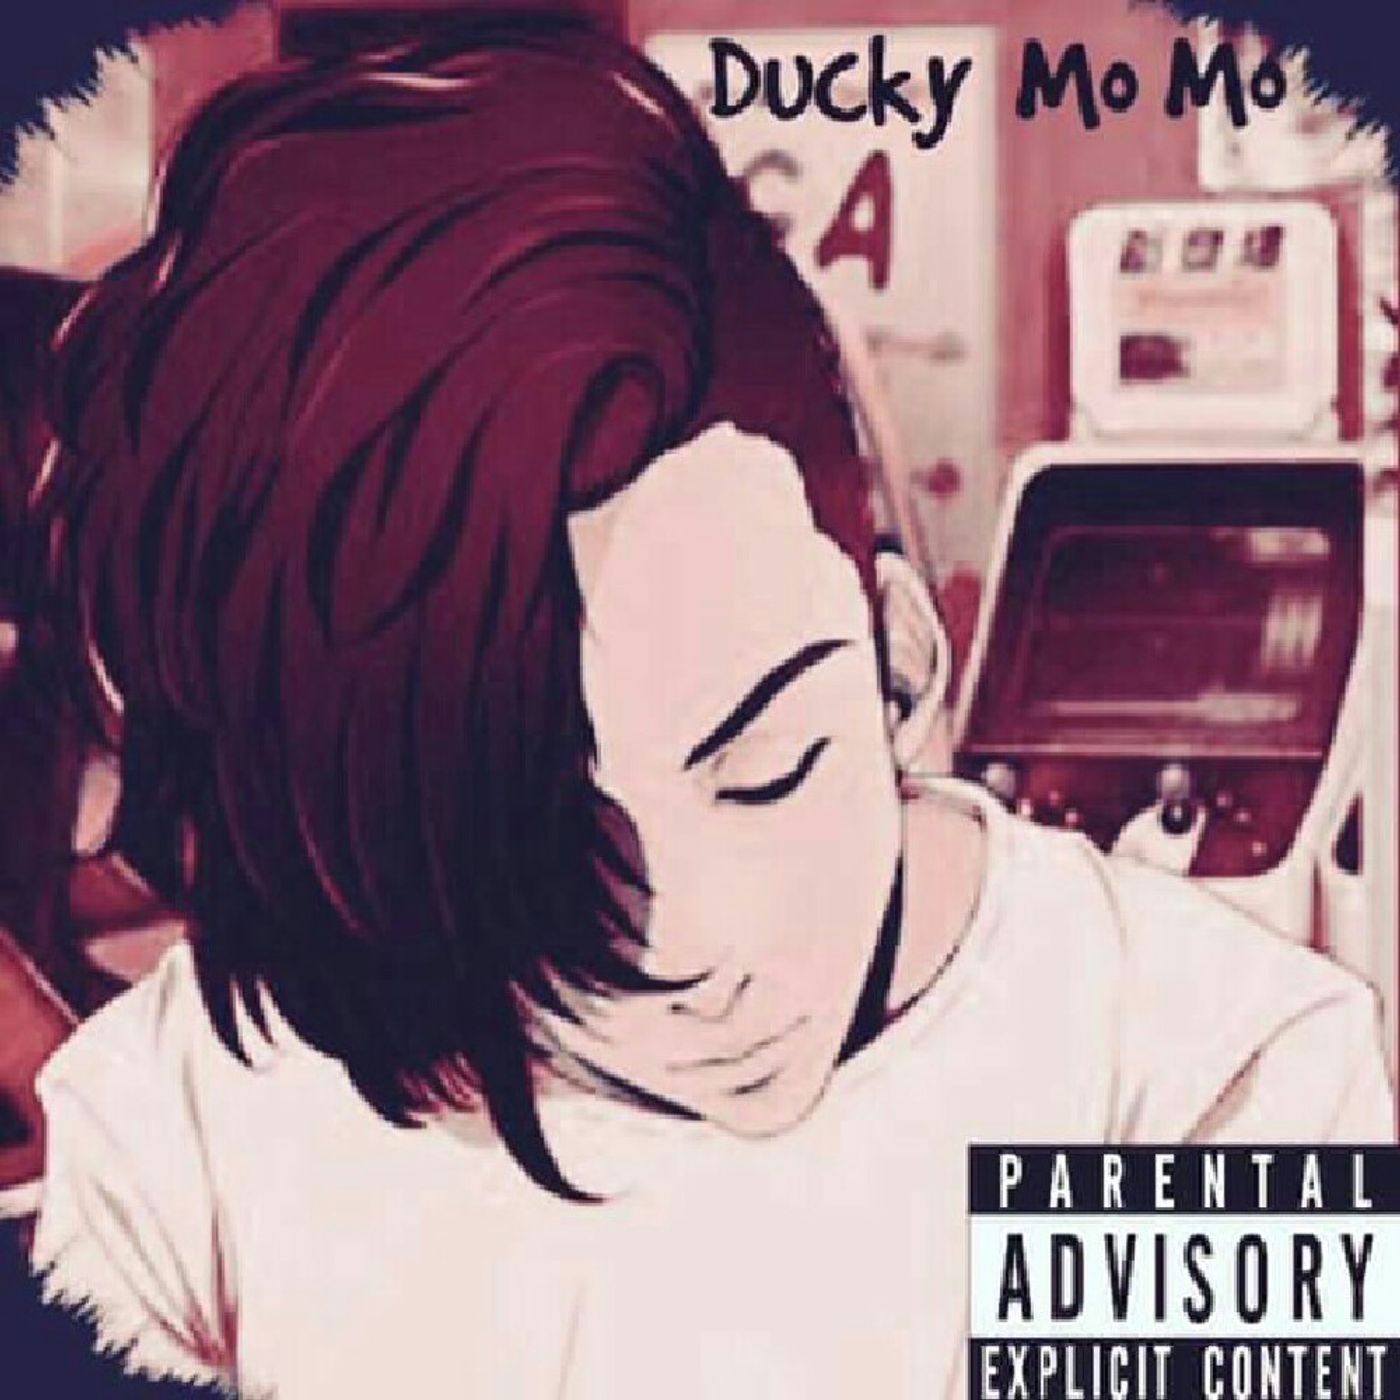 Ducky Mo Mo tracks